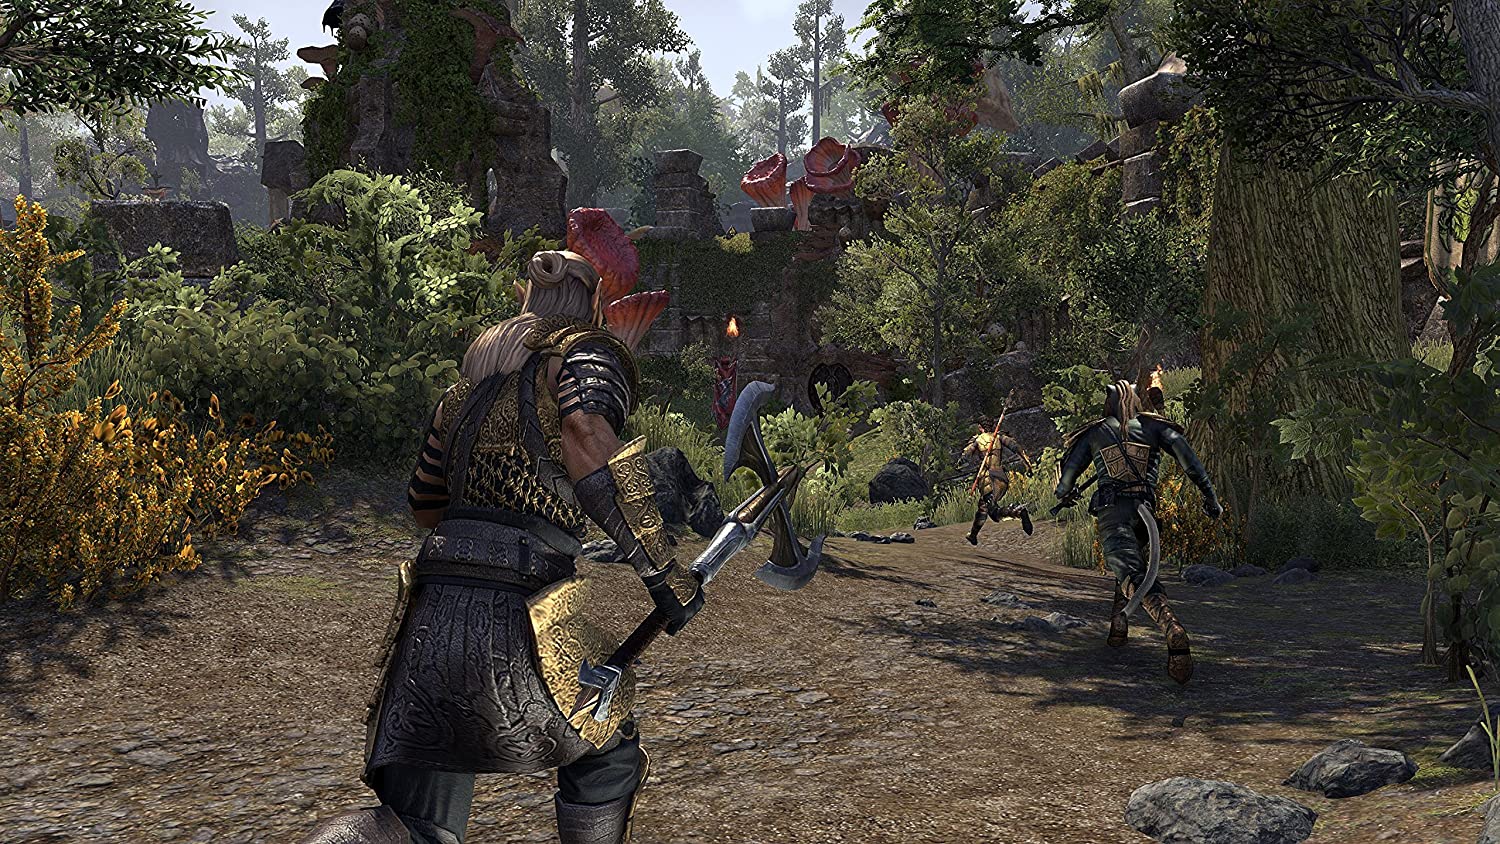 PS4: The Elder Scrolls Online: Morrowind